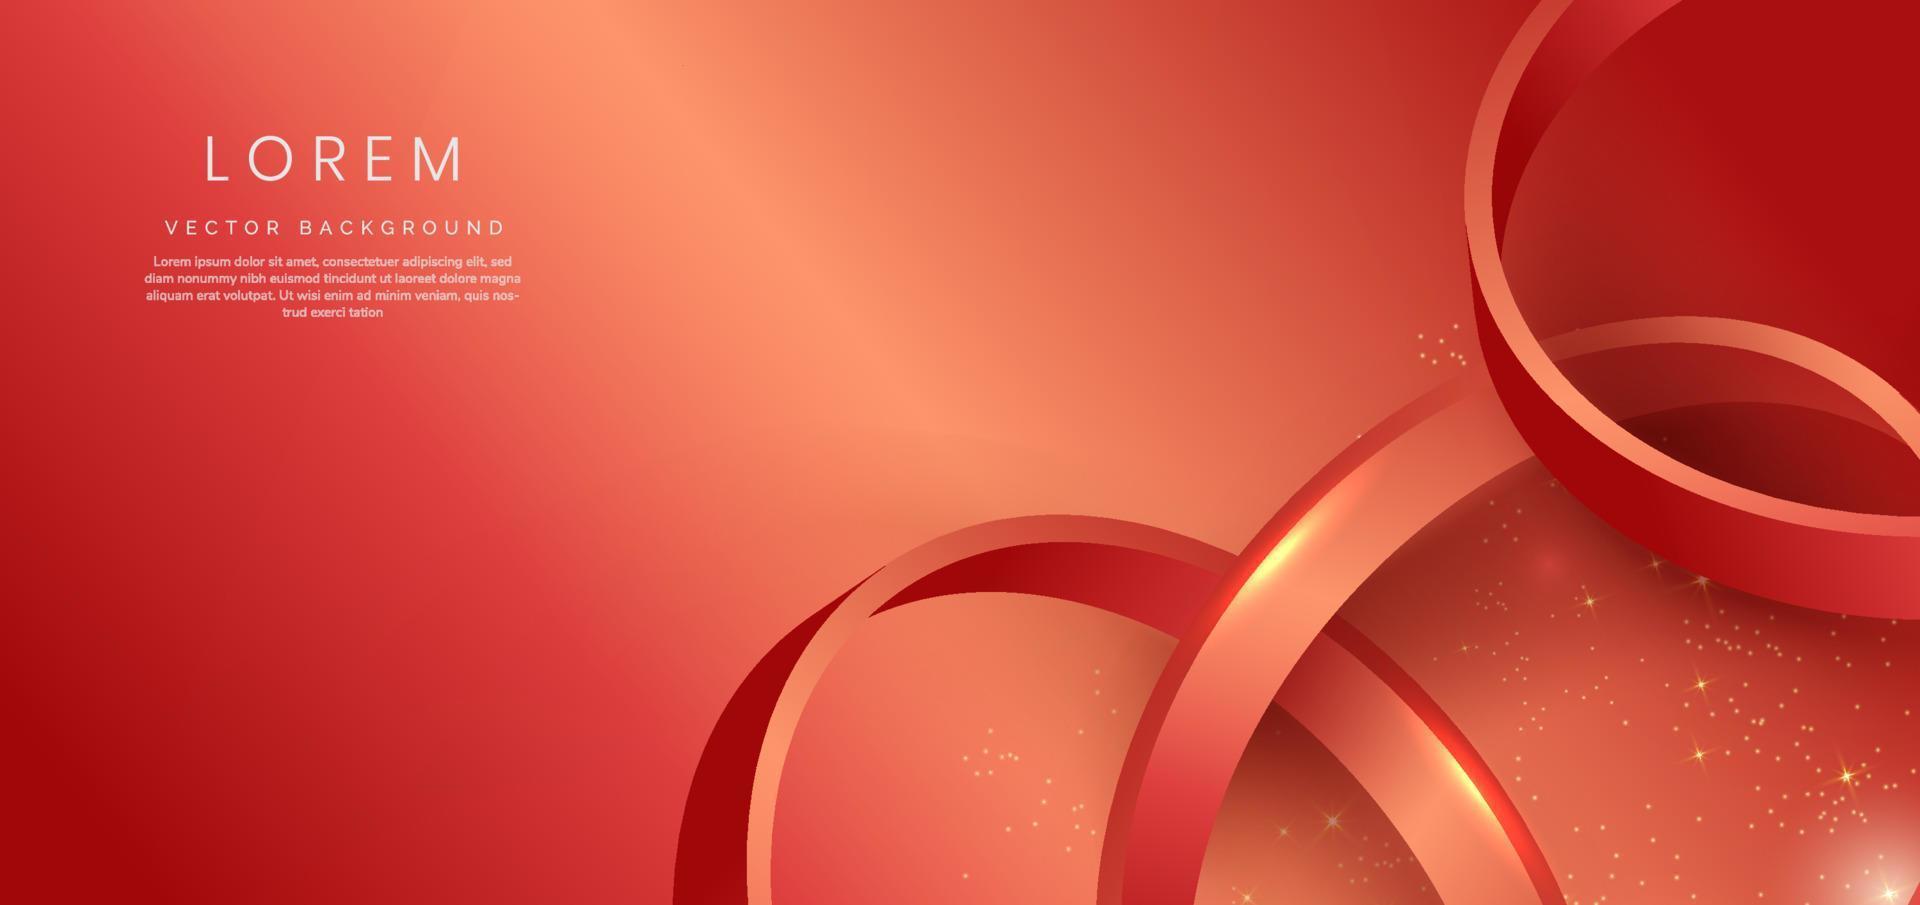 círculo rojo 3d abstracto sobre fondo rojo con efecto de iluminación y brillo con espacio de copia para texto. estilo de diseño de lujo. vector